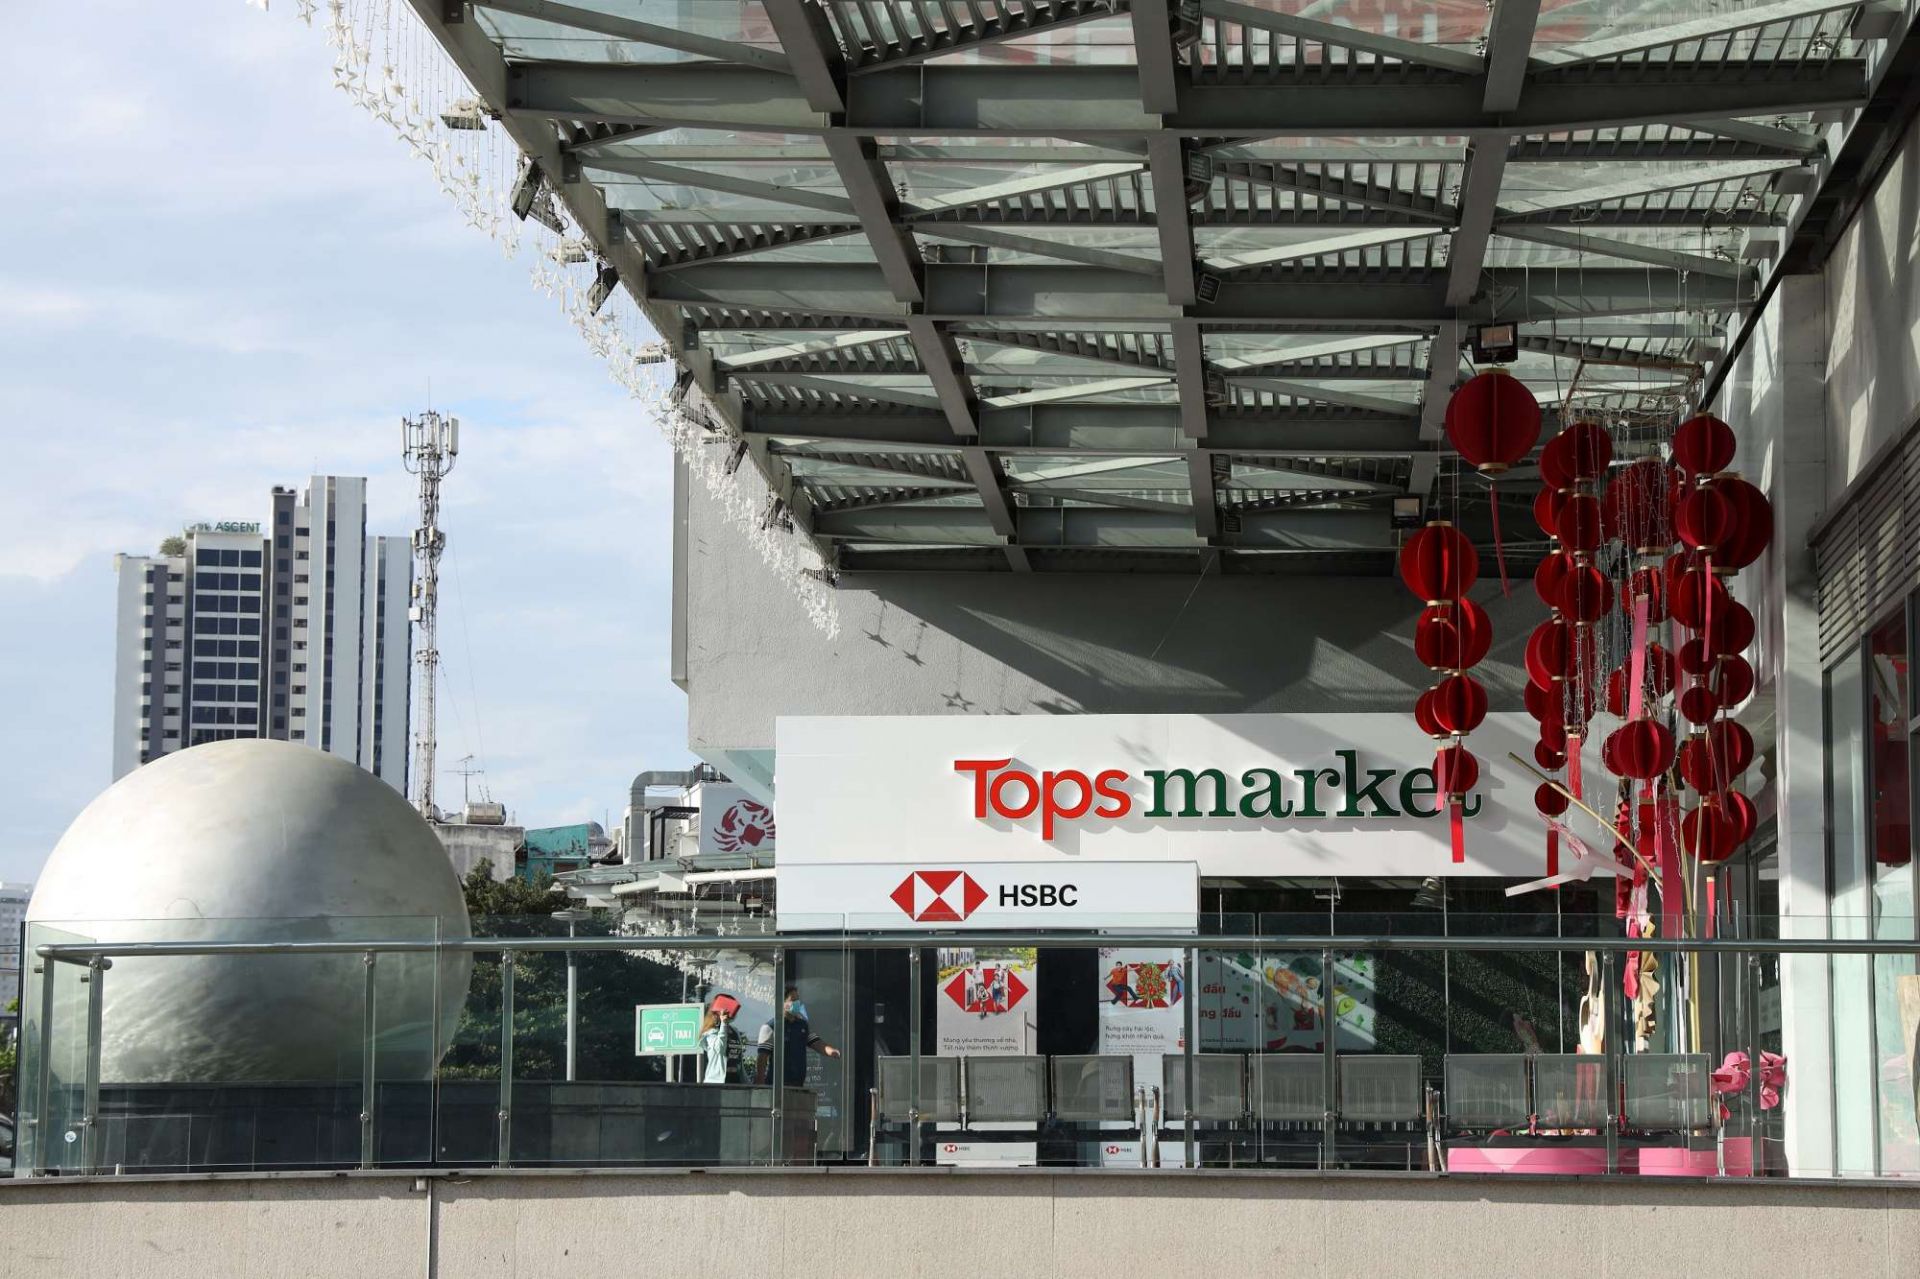 Đã có những lo ngại khi Central Retail công bố chiến lược chuyển đổi các siêu thị Big C vốn đã quen thuộc sang một thương hiệu mới là Tops Market, song sự mở rộng quy mô liên tục của Tập đoàn này tại thị trường Việt Nam đã chứng minh điều đúng đắn